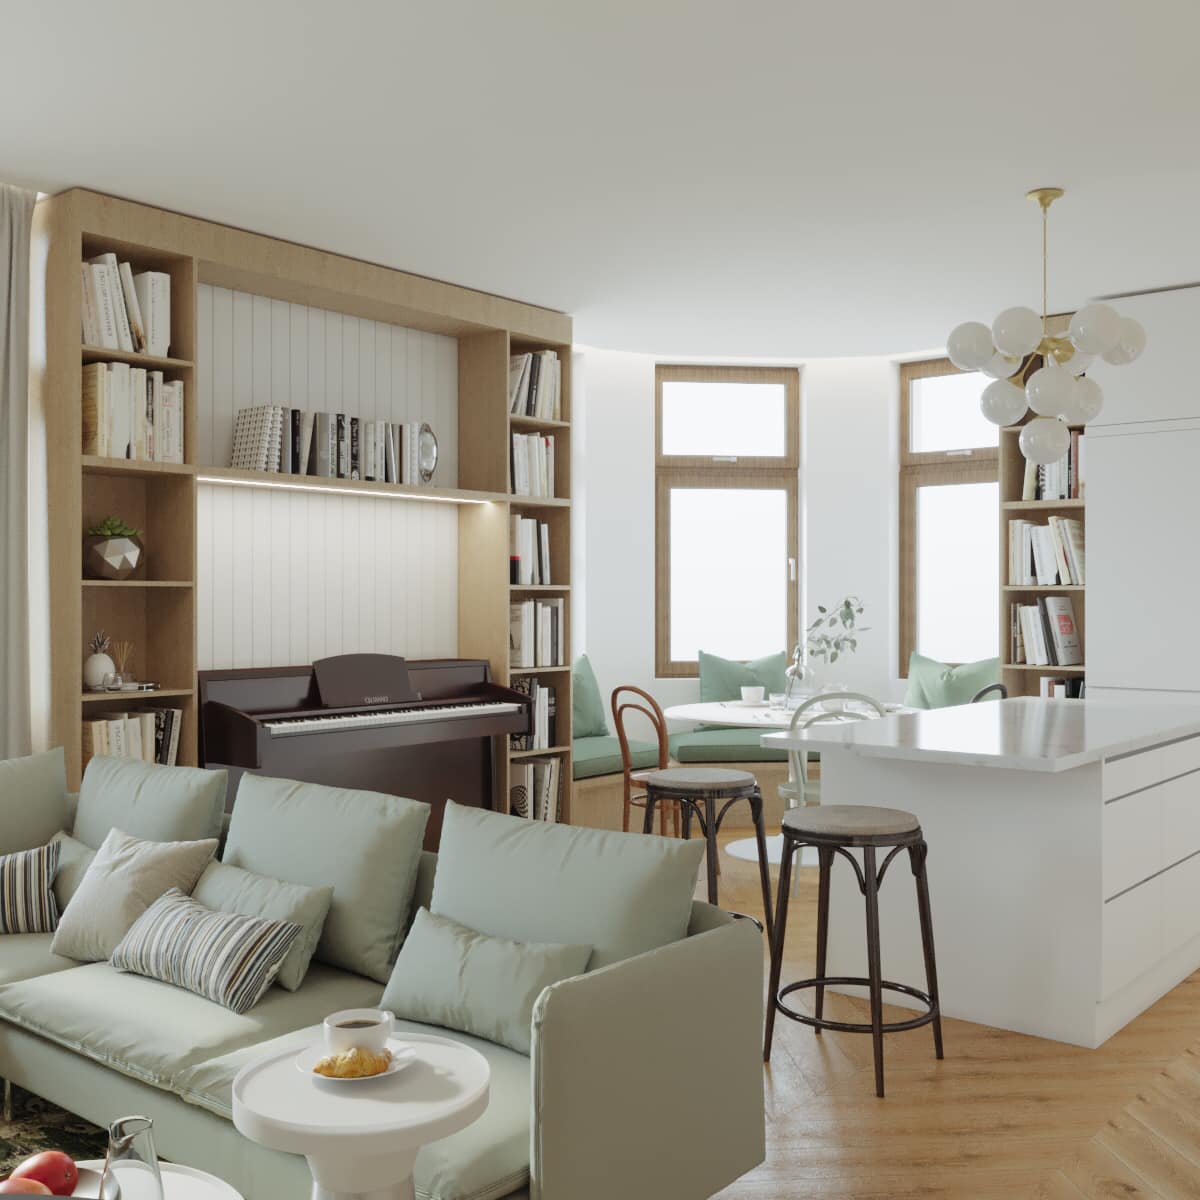 kuchyň s obývákem.jpg - Virtuální bydlení